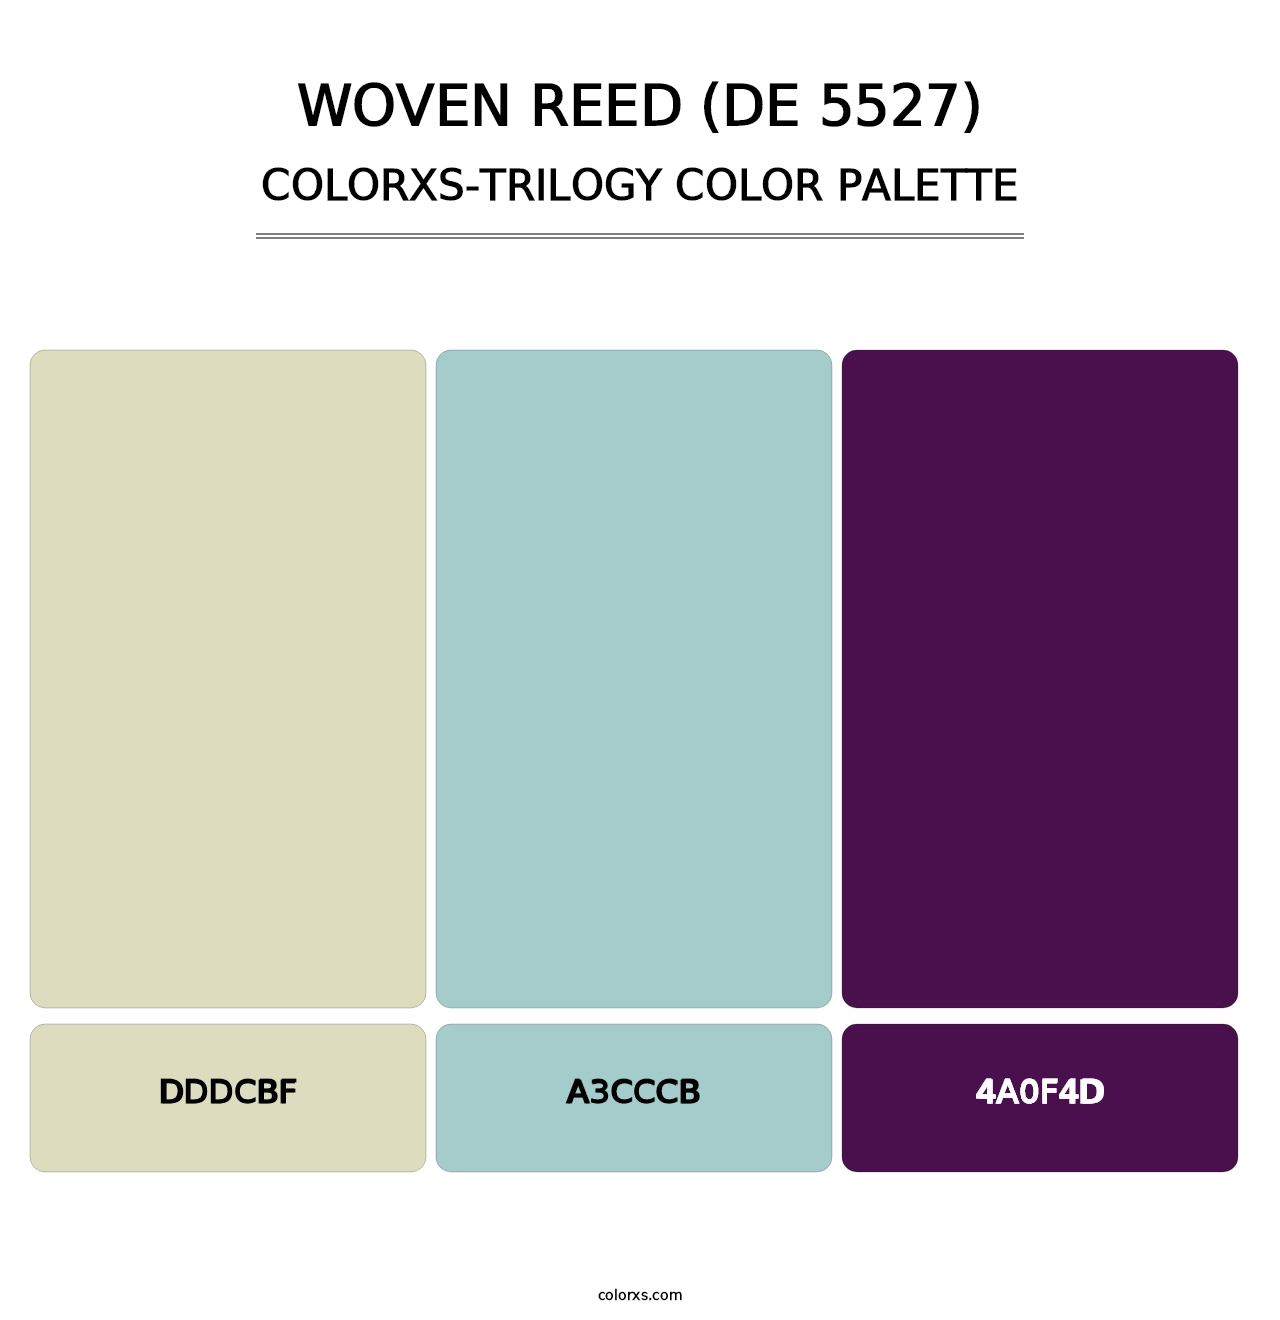 Woven Reed (DE 5527) - Colorxs Trilogy Palette